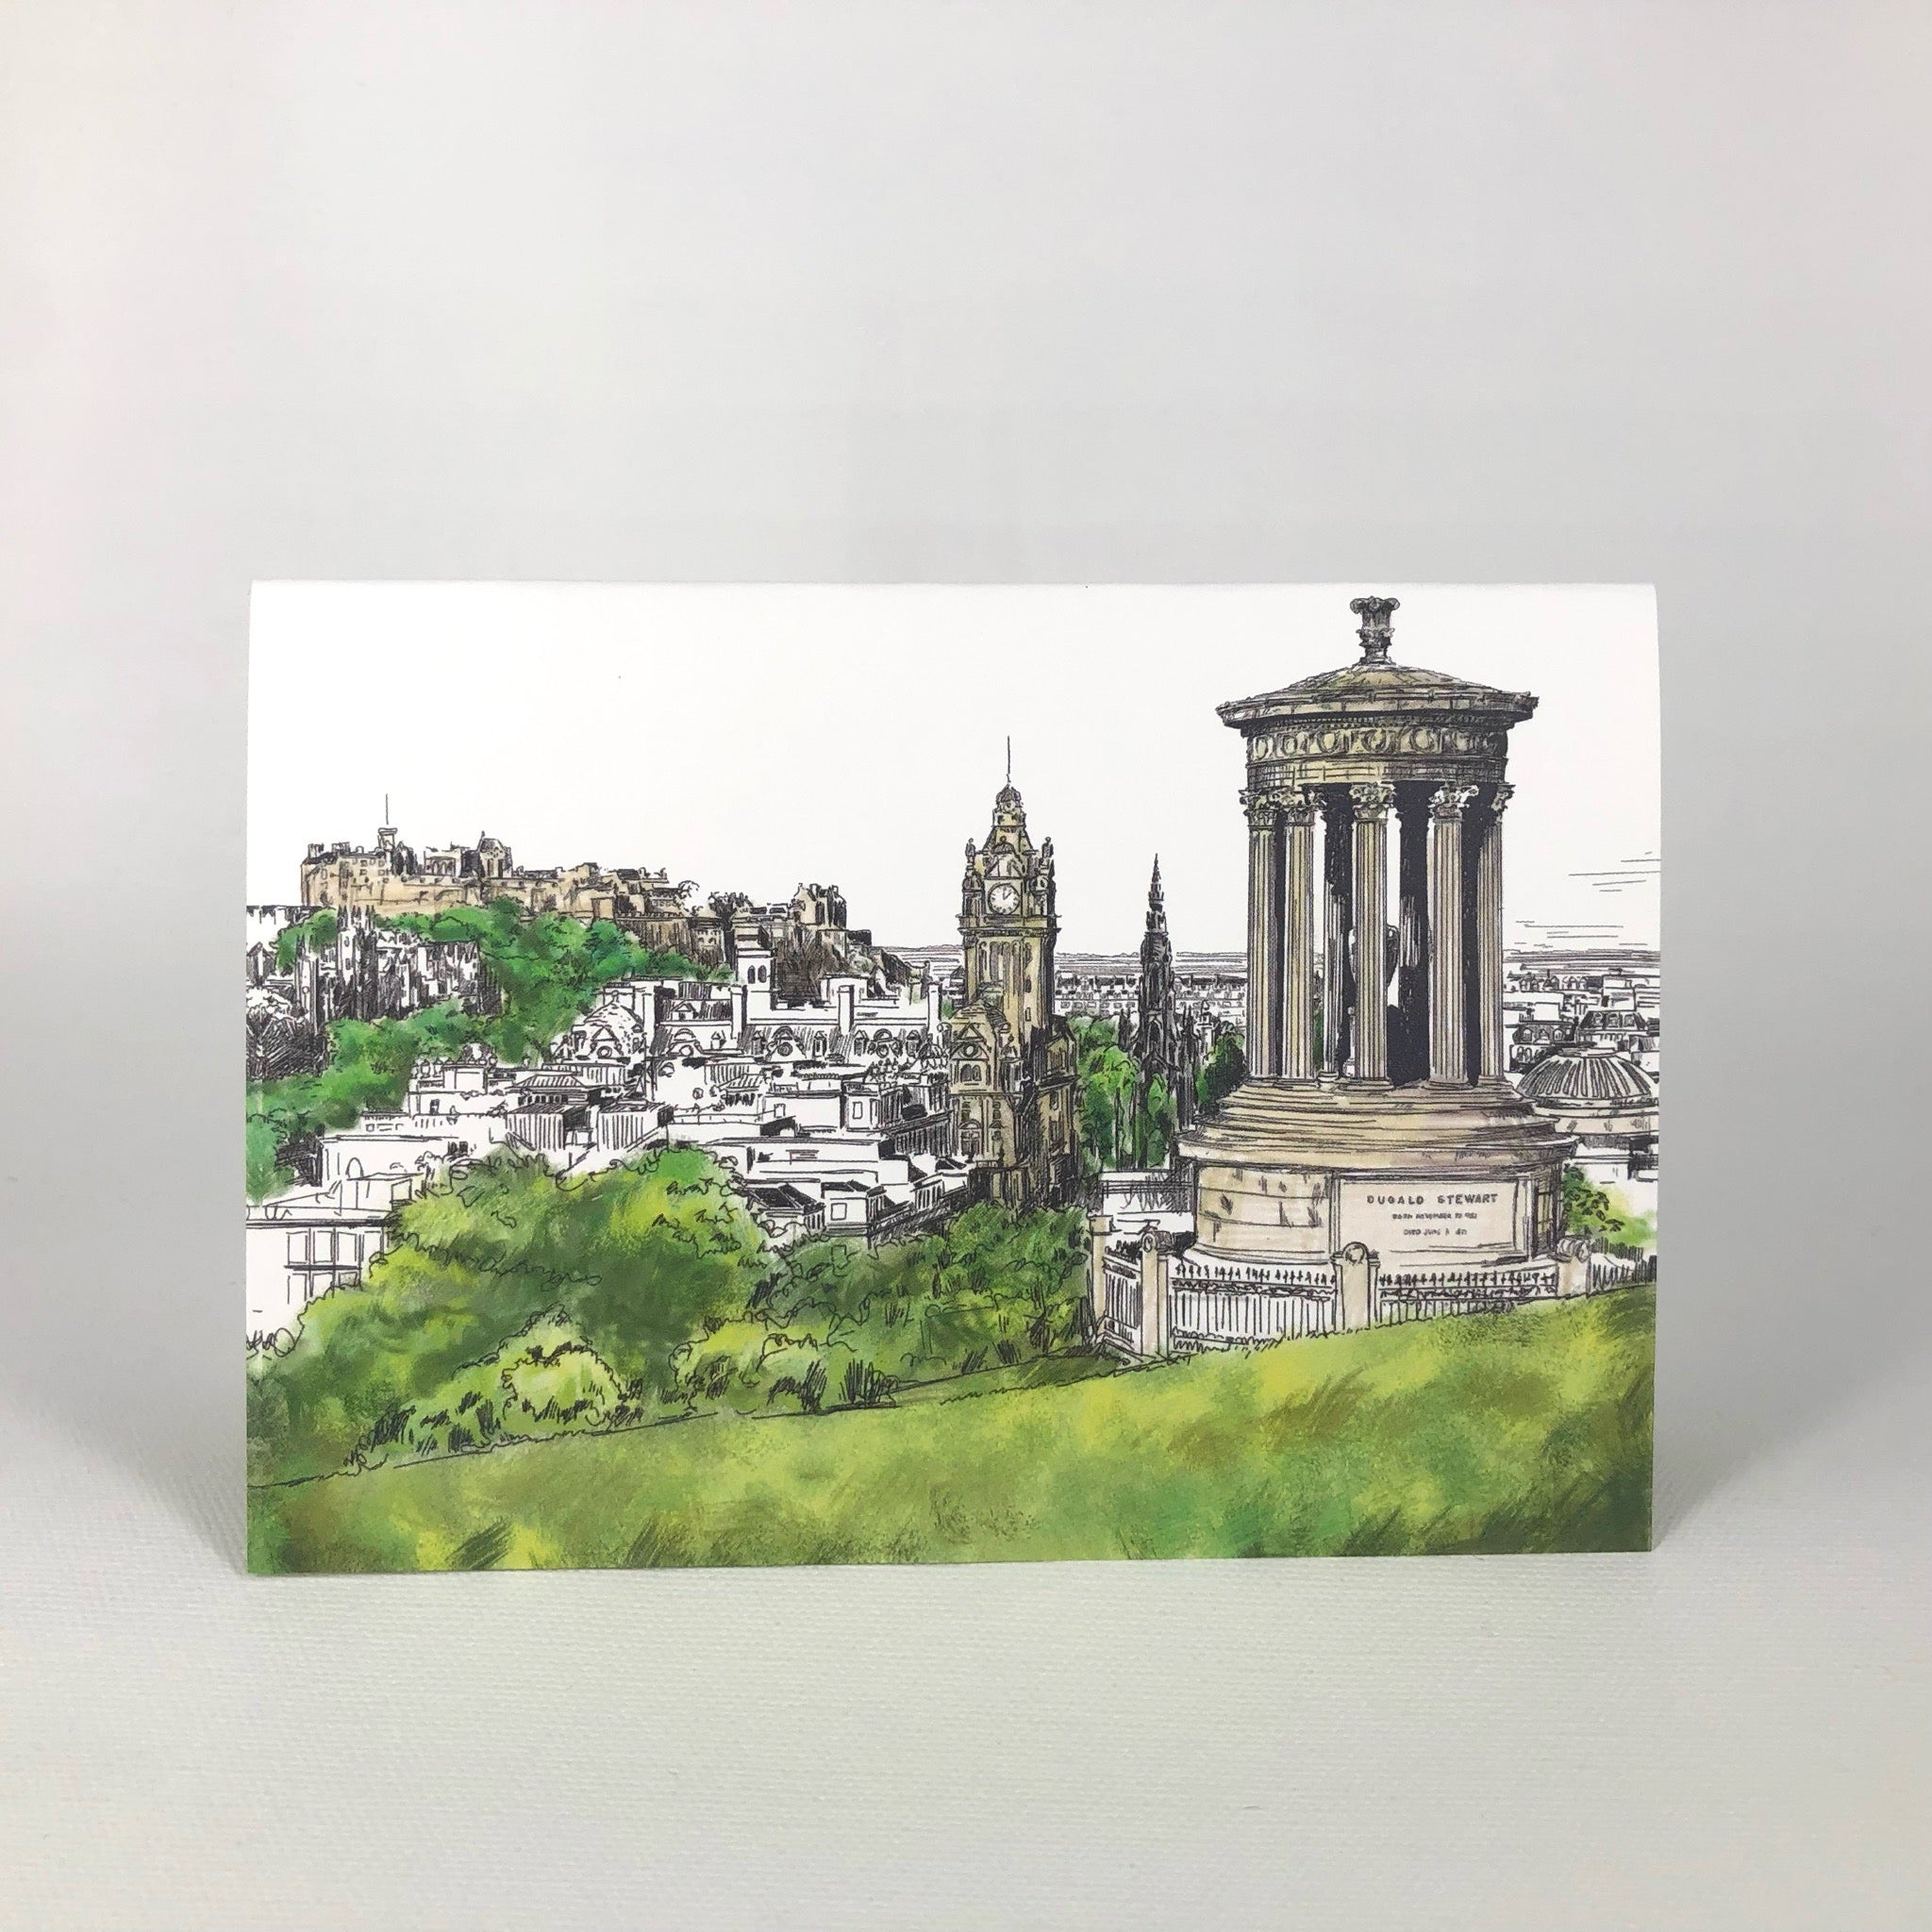 Calton Hill Edinburgh Greeting Card